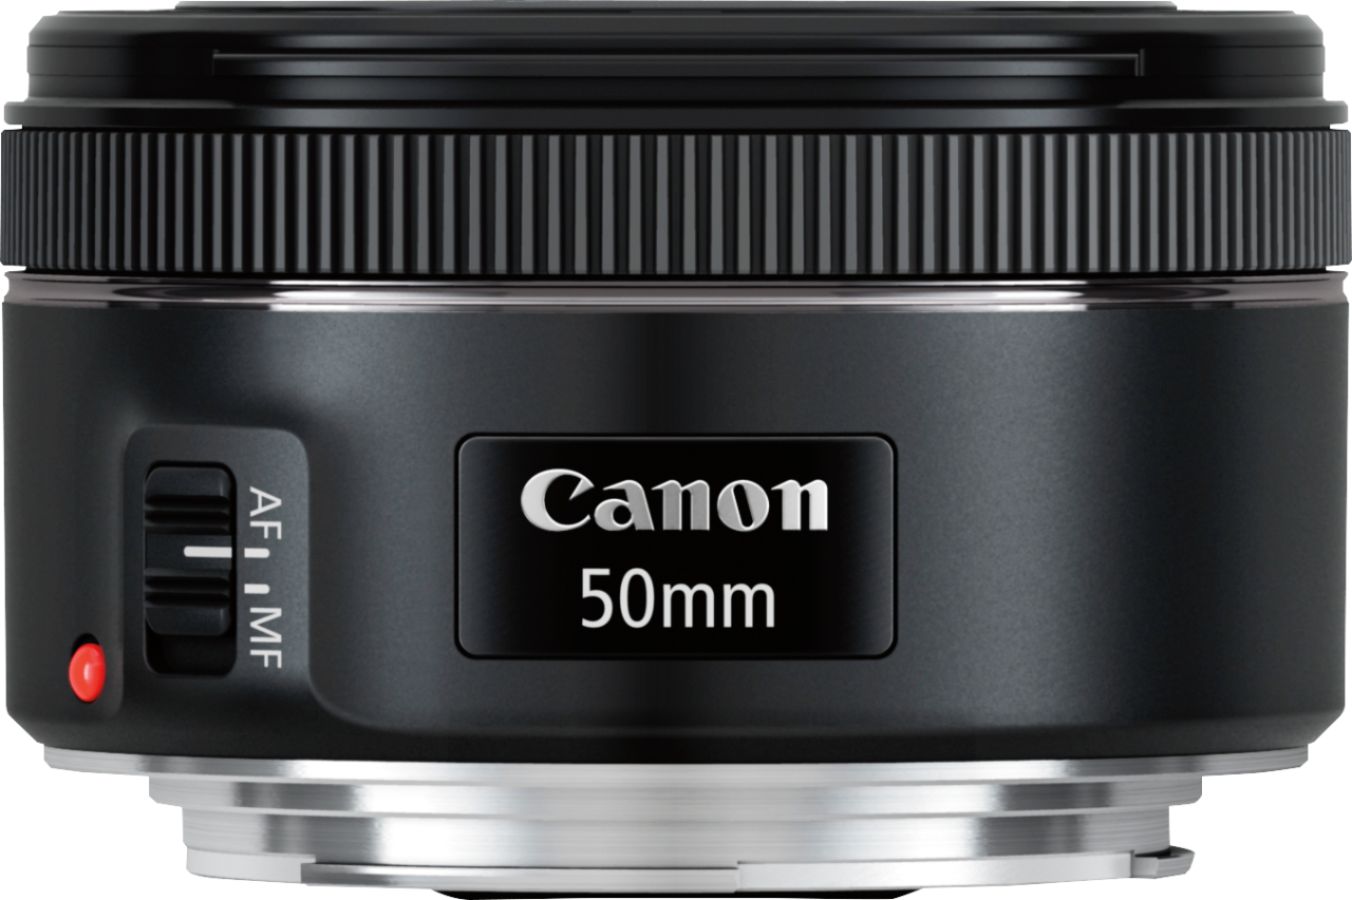 Canon EFmm F1.8 STM Standard Prime Lens for EOS DSLR Cameras